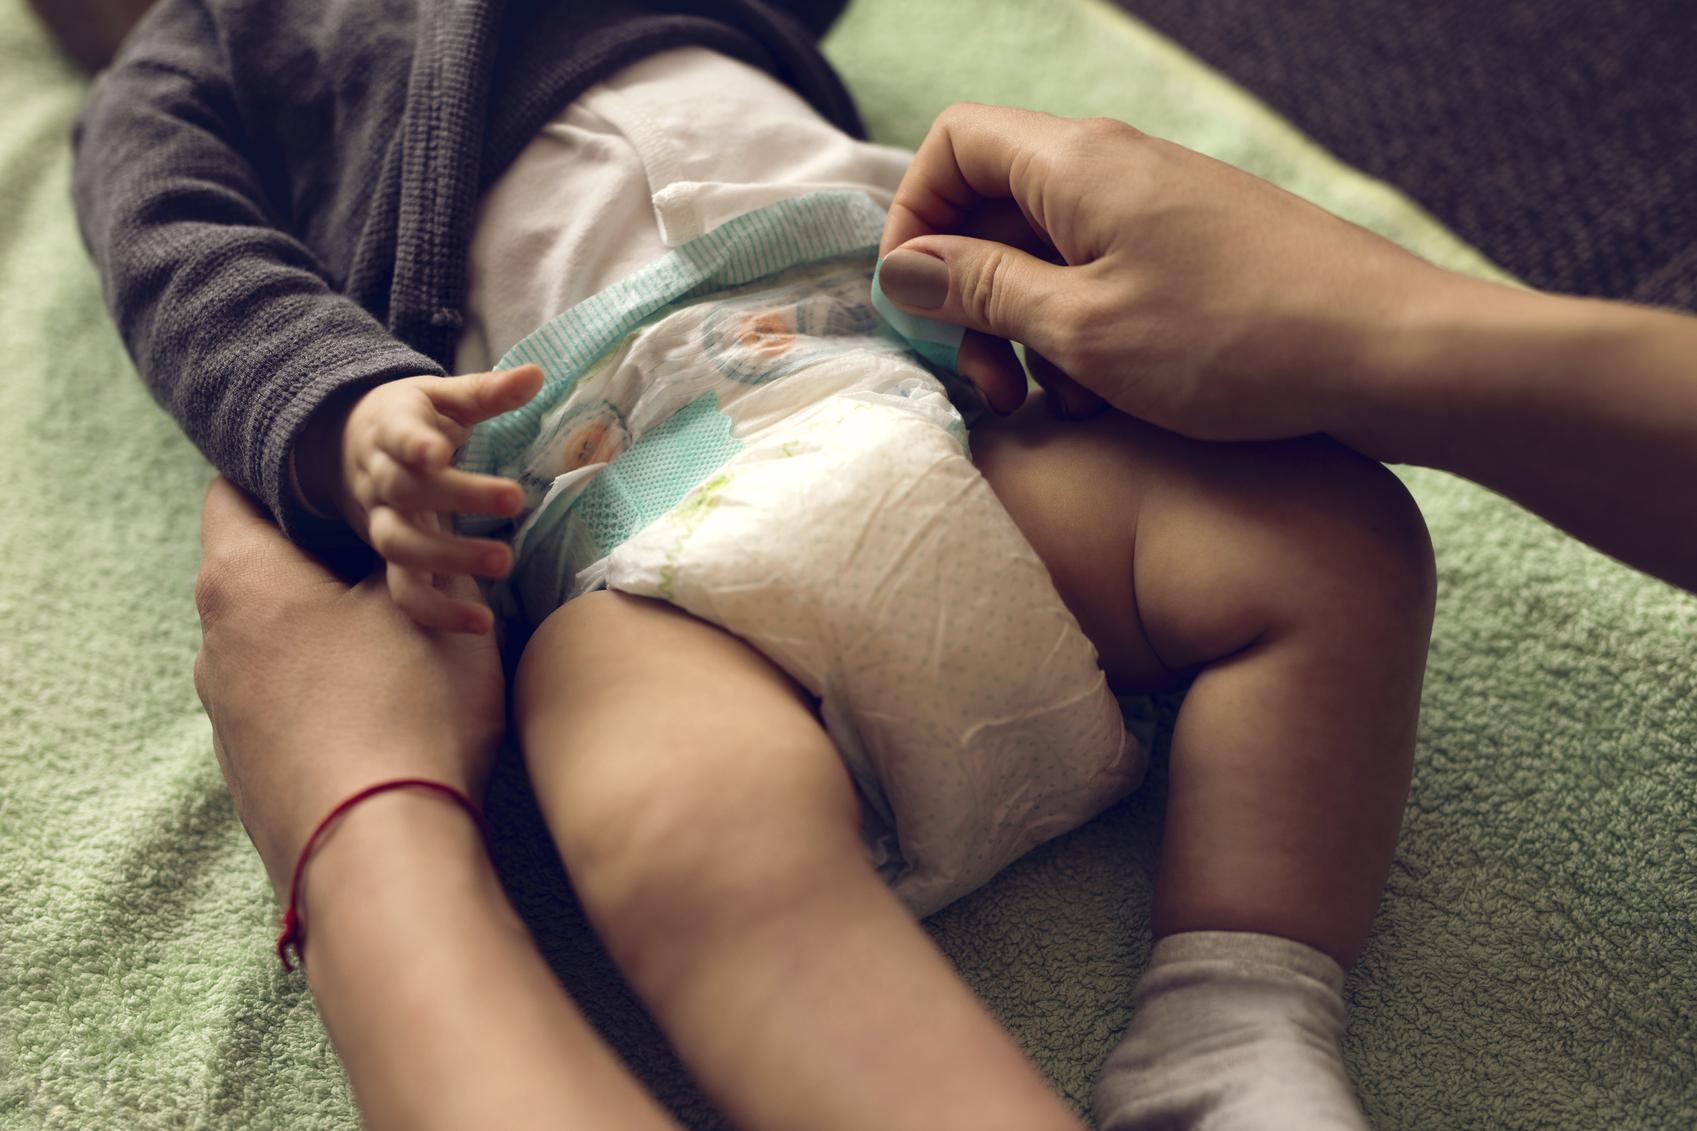 Rady detskej lekárky: Ako správne plienkovať bábätko? | Najmama.sk